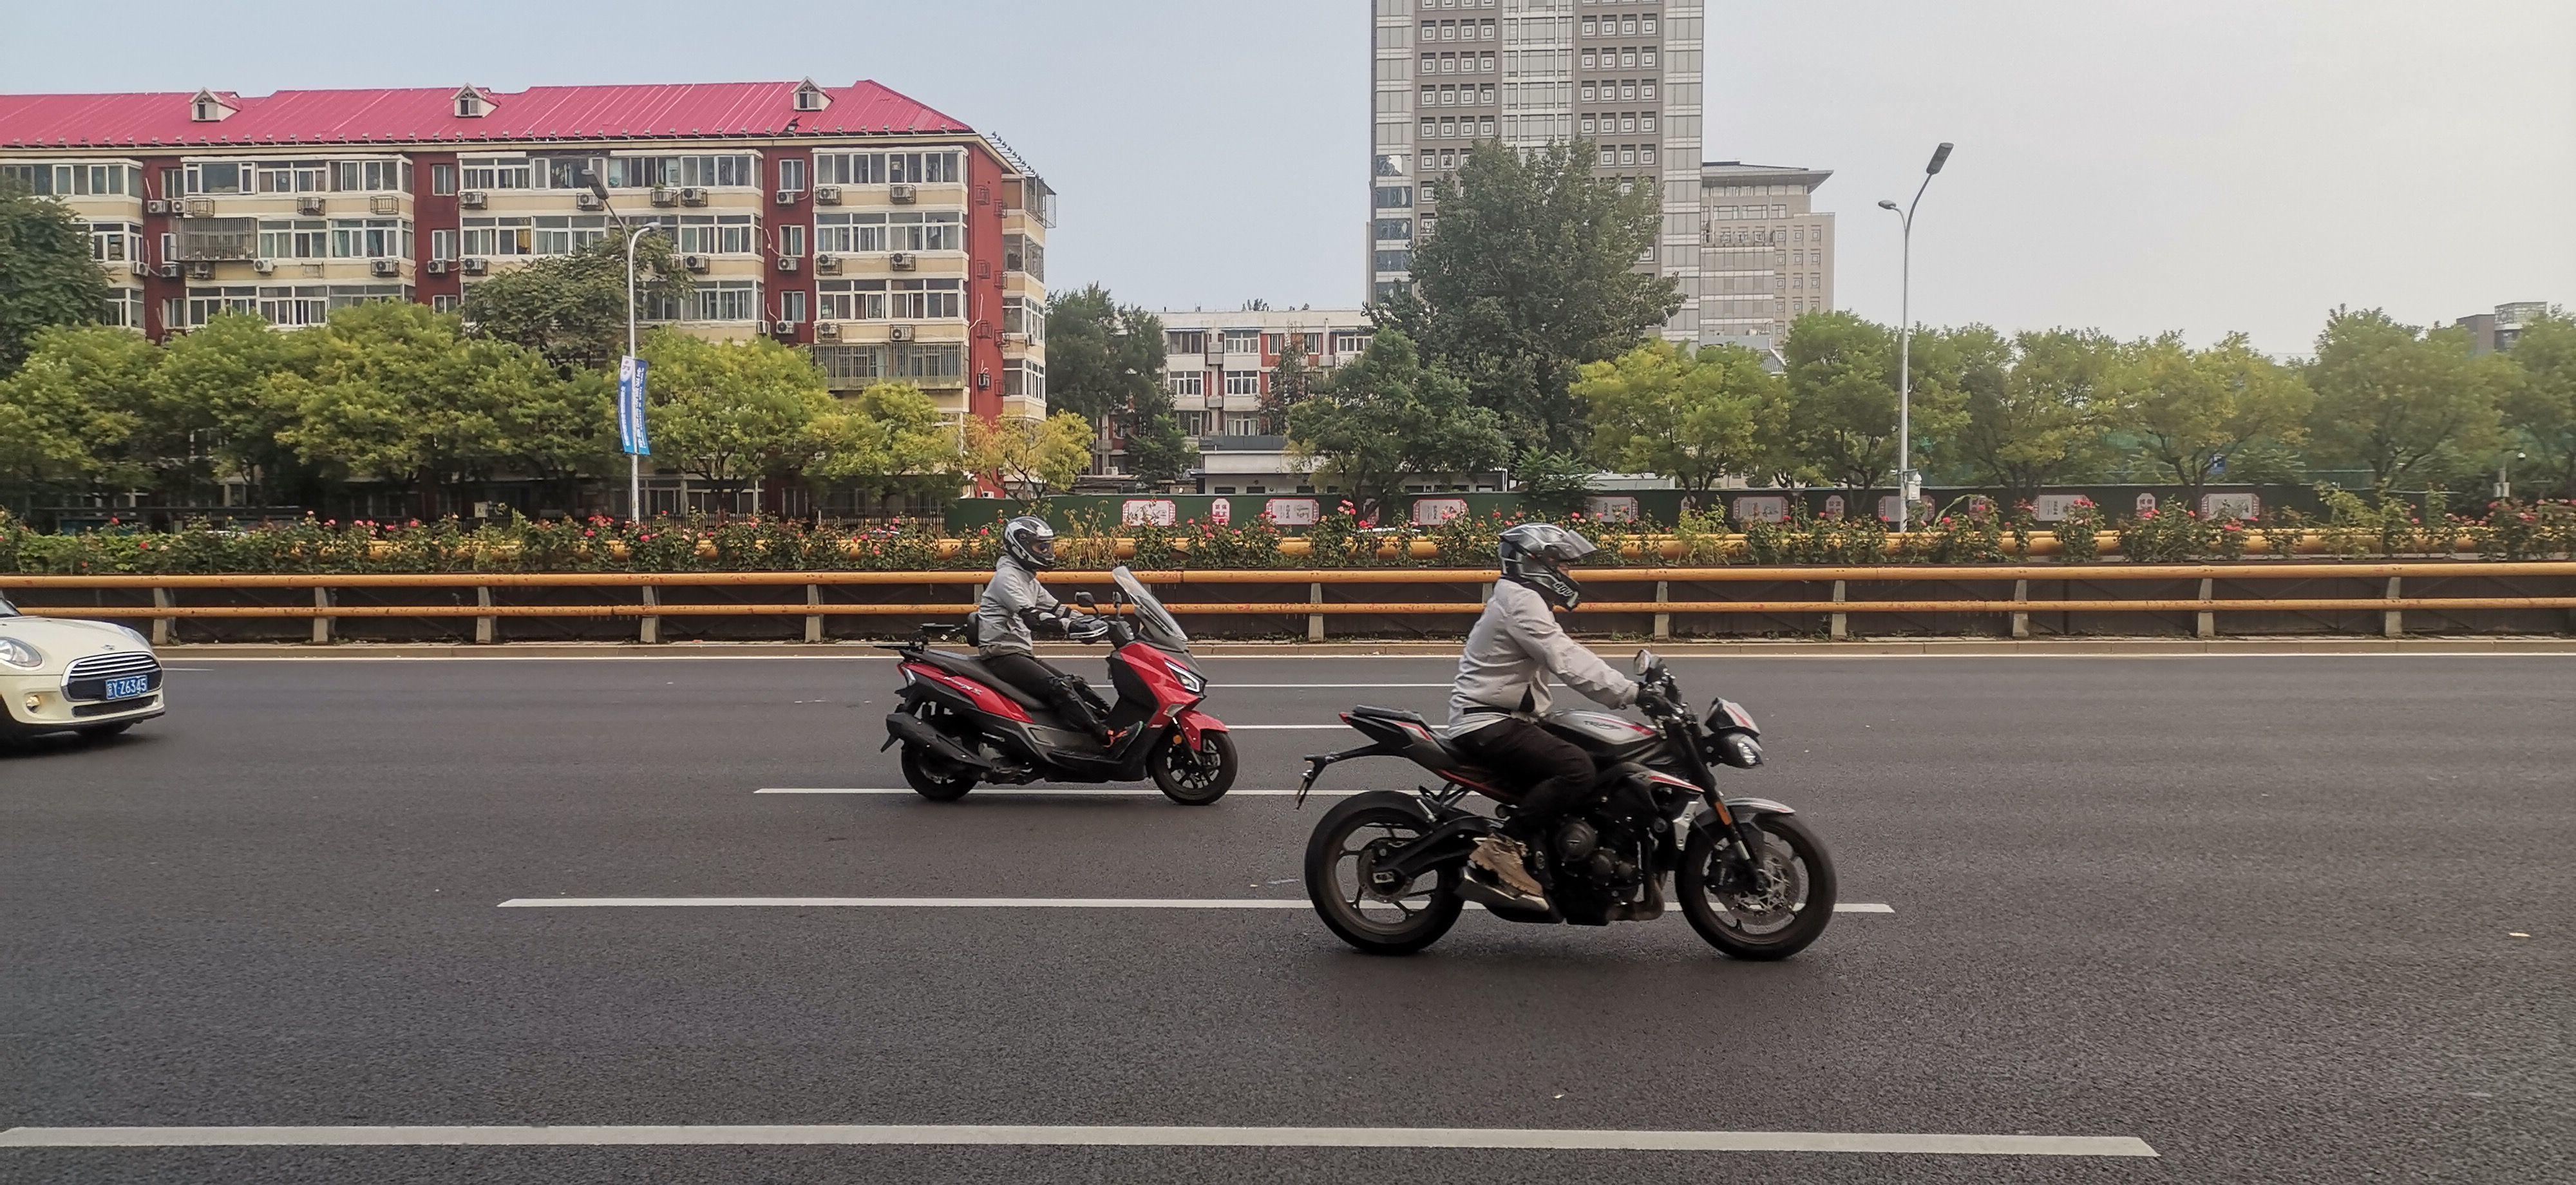 北京出差,看到北四环上有很多京b摩托通过,保有量非常高,有